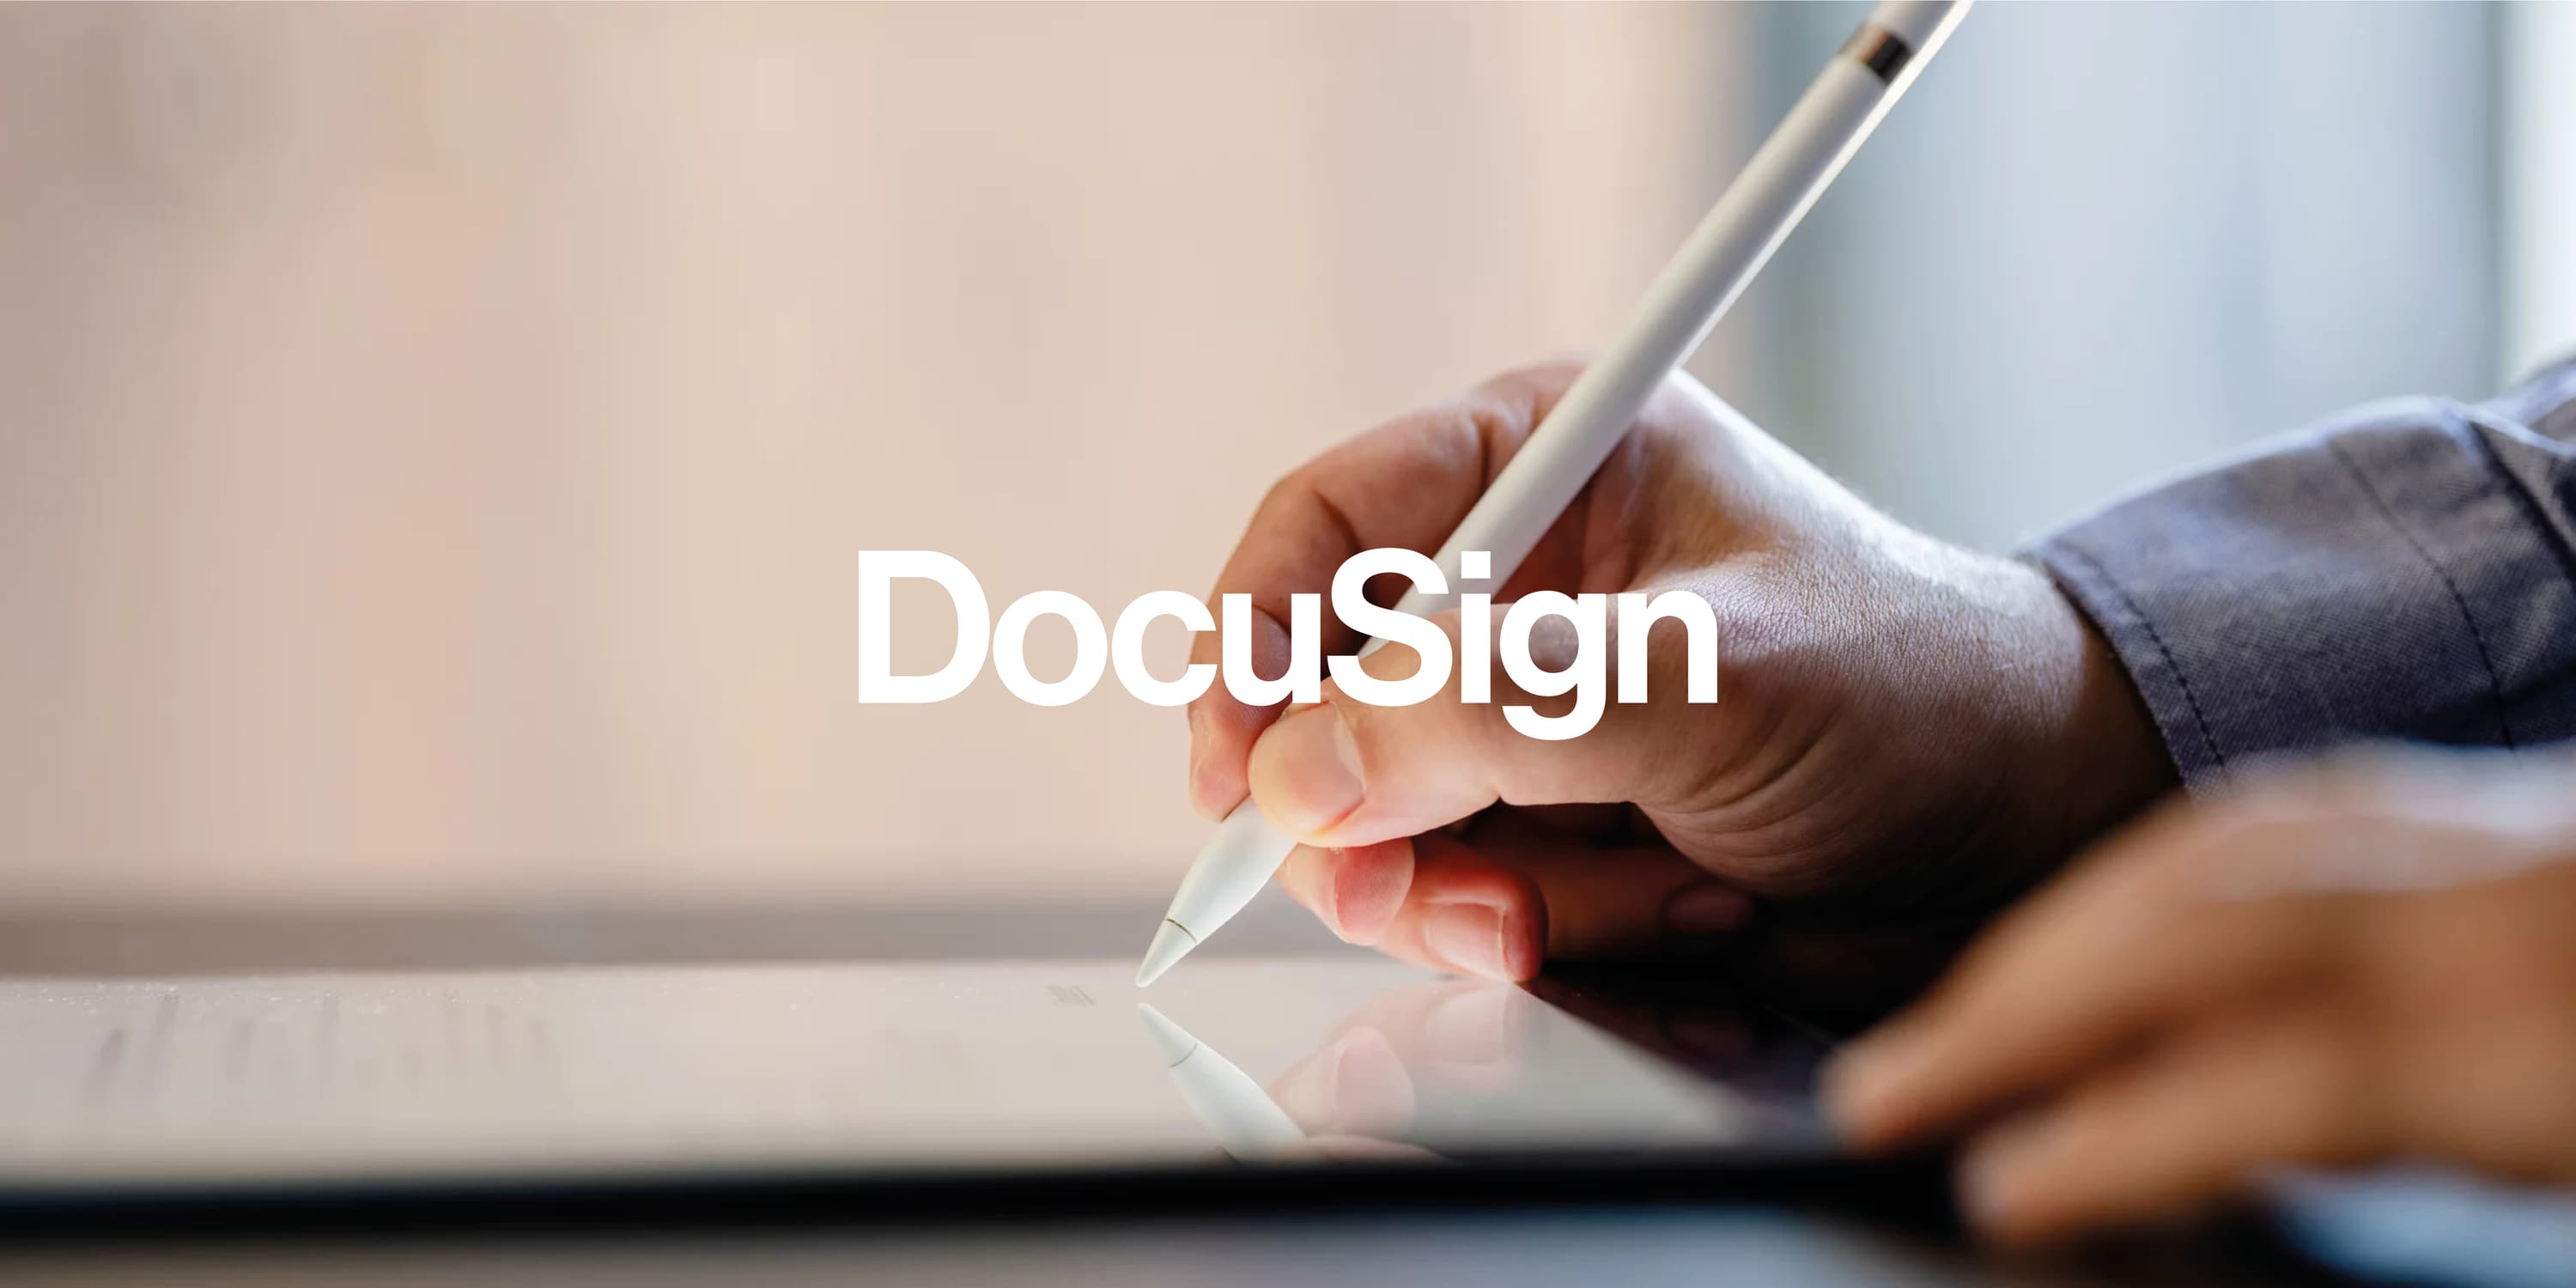 DocuSign Aktienanalyse: Der #1 eSignature-Anbieter digitalisiert Vertragsprozesse und eliminiert Papier